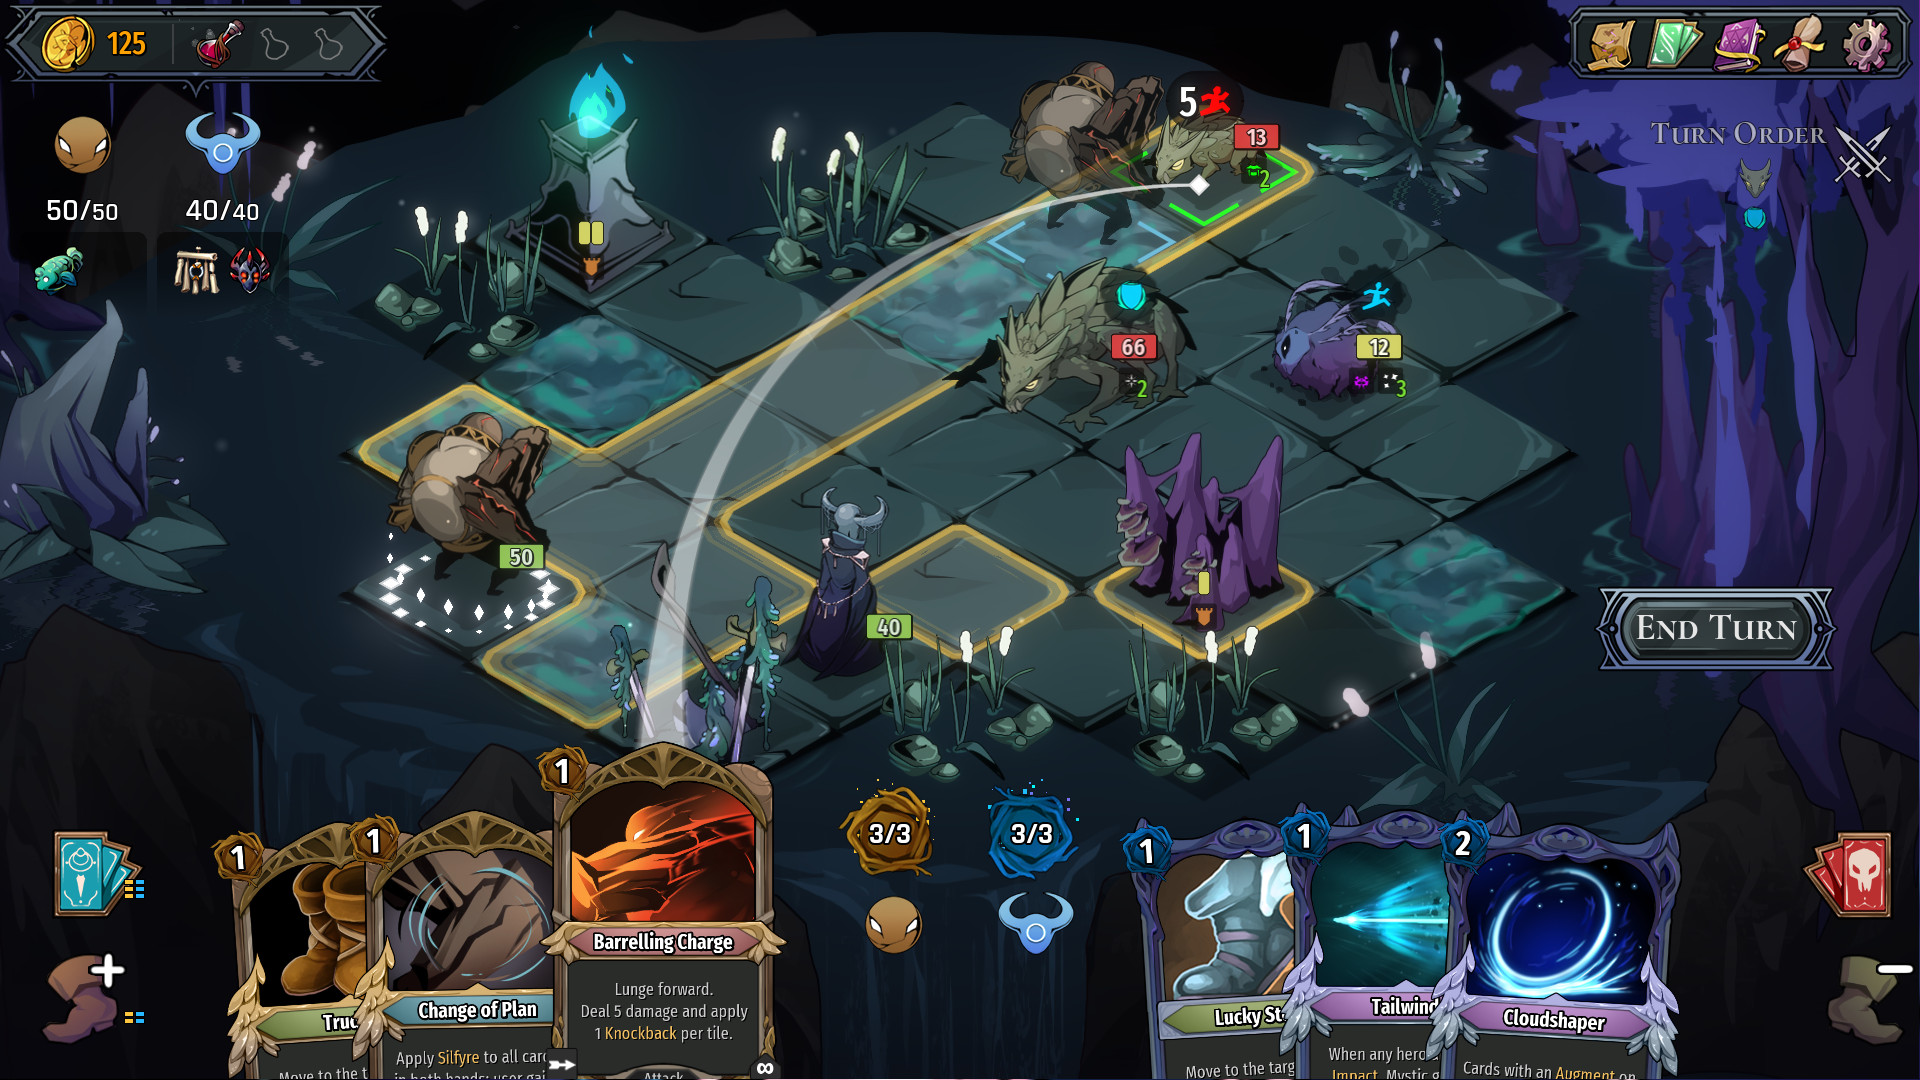 Tendryll: captura de pantalla que muestra al Dragón usando su habilidad 'Barreling Charge' para cruzar el mapa en un turno.